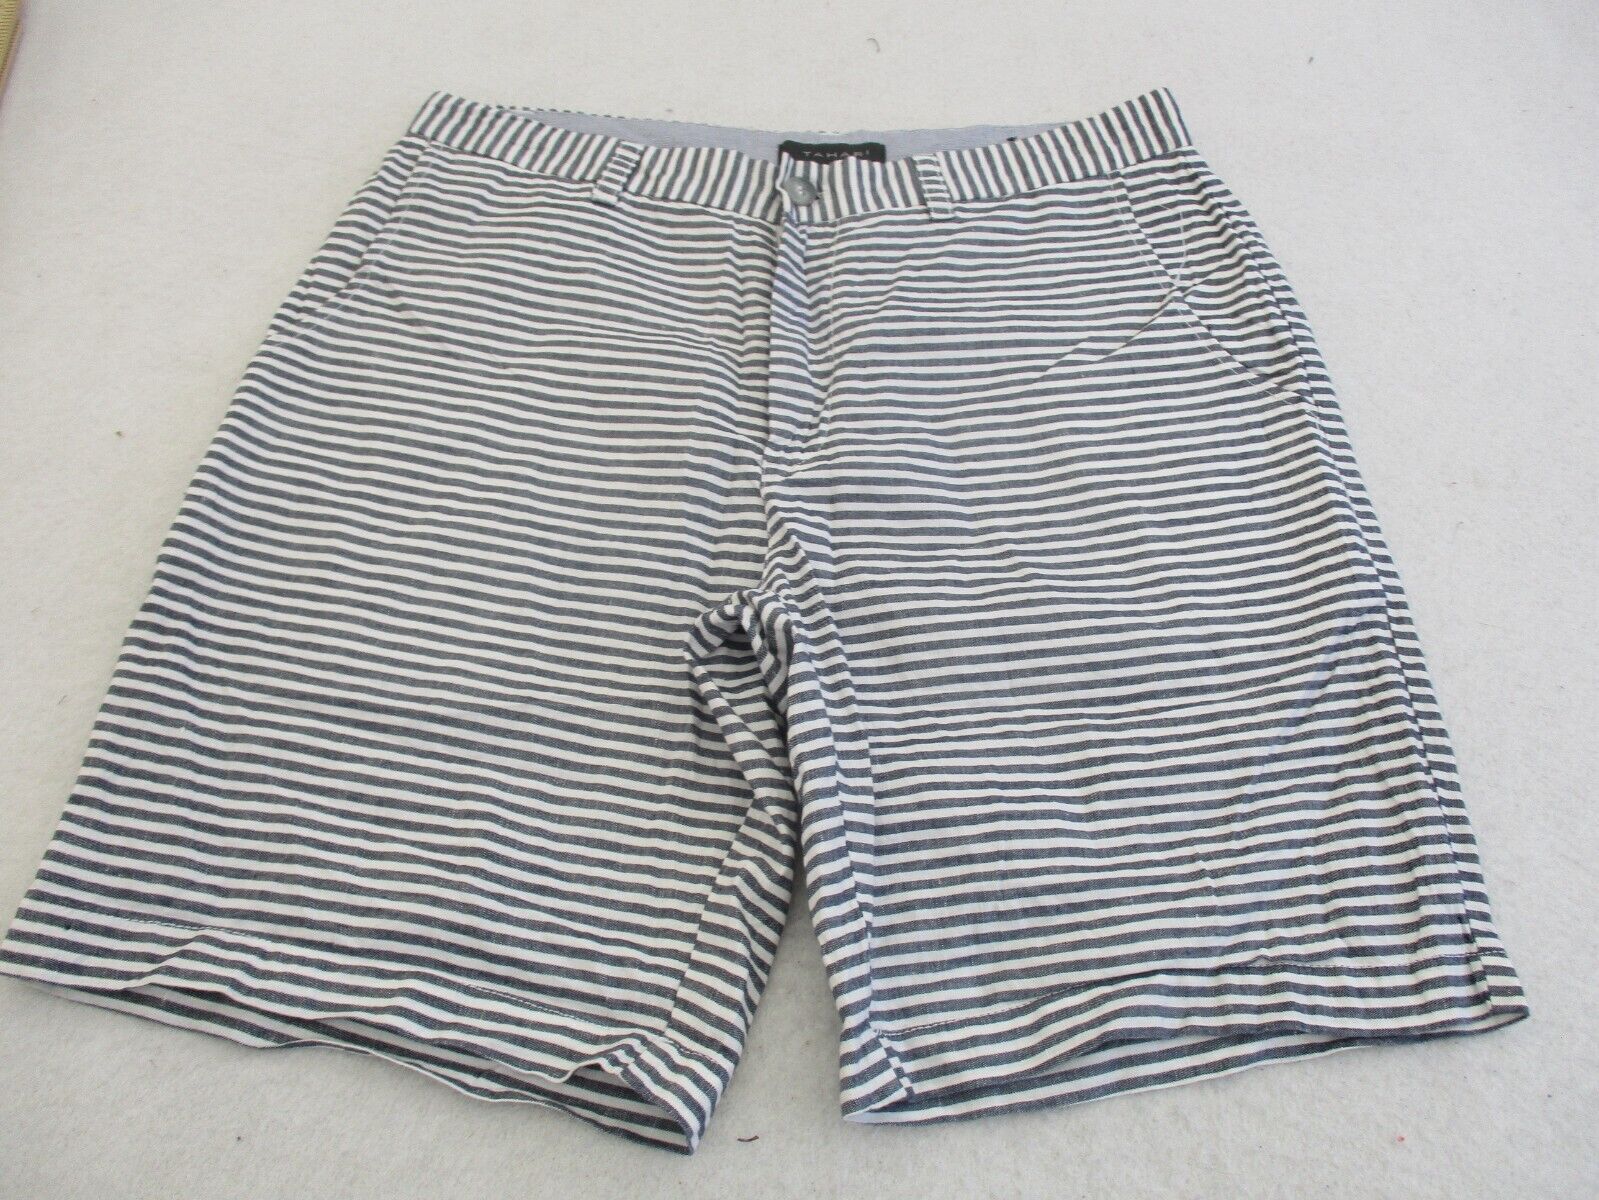 Tahari Striped shorts sz 33